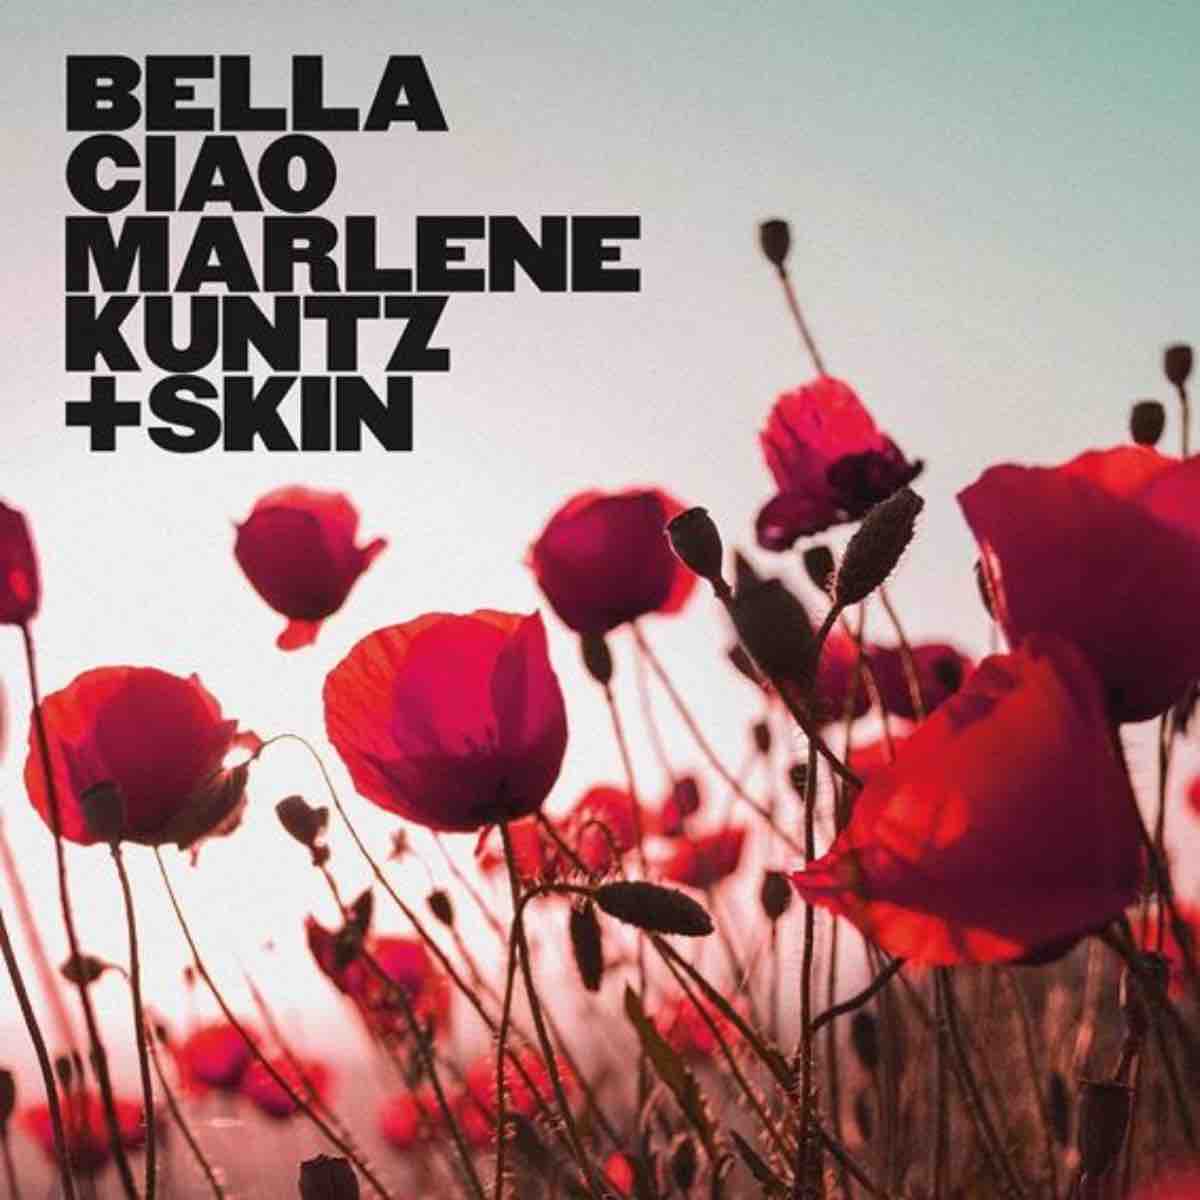 Marlene Kuntz, il 25 aprile esce la versione di "Bella Ciao" con Skin